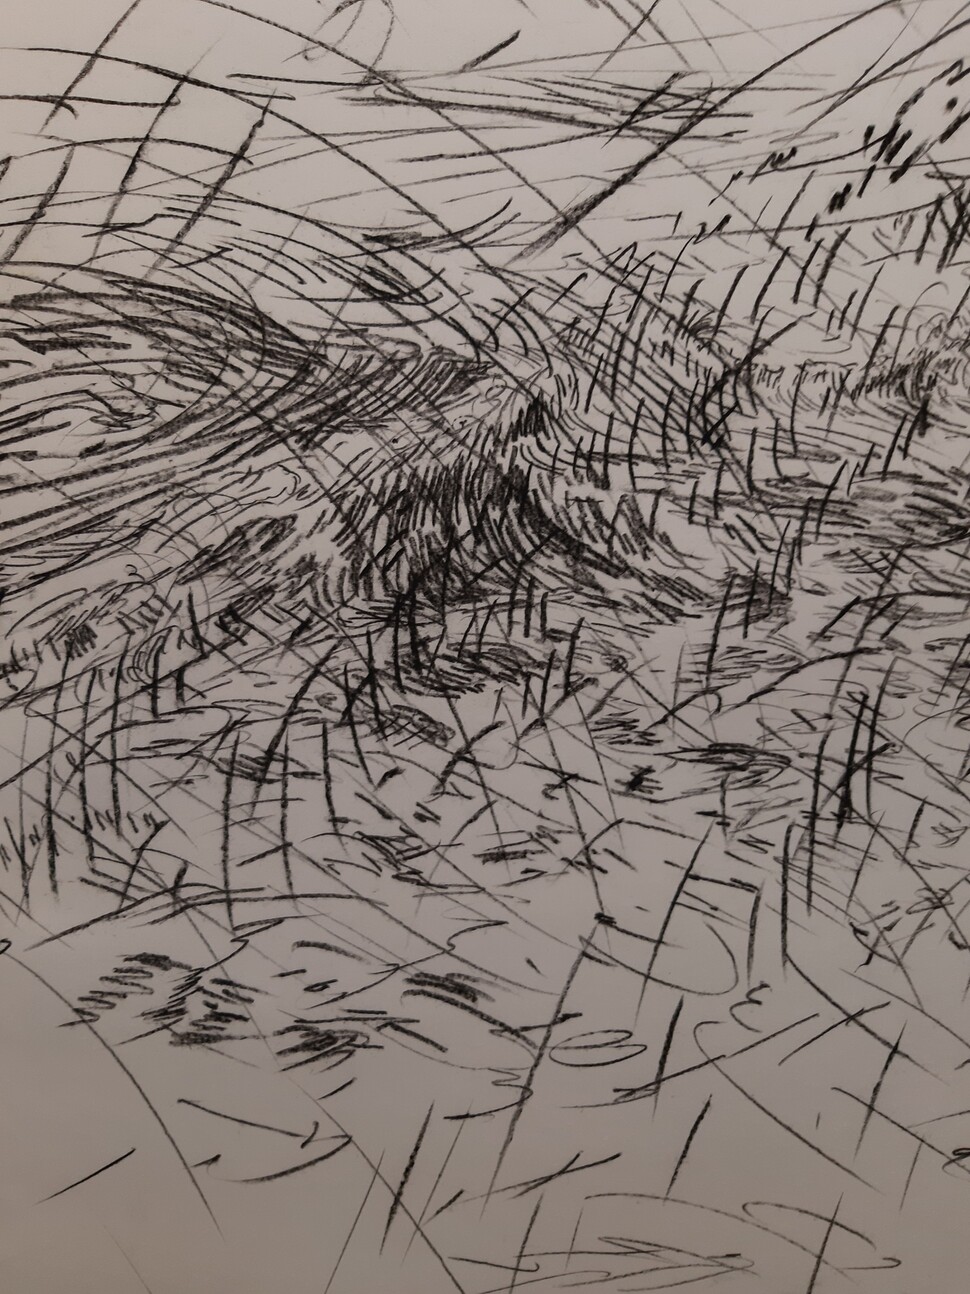 권혜성 작가의 신작 &lt;파도들 2&gt;(부분). 태풍으로 파도가 몰아치는 제주 중문 앞바다의 시각적 기억을 곤두선 필선으로 되살려낸 작품이다.